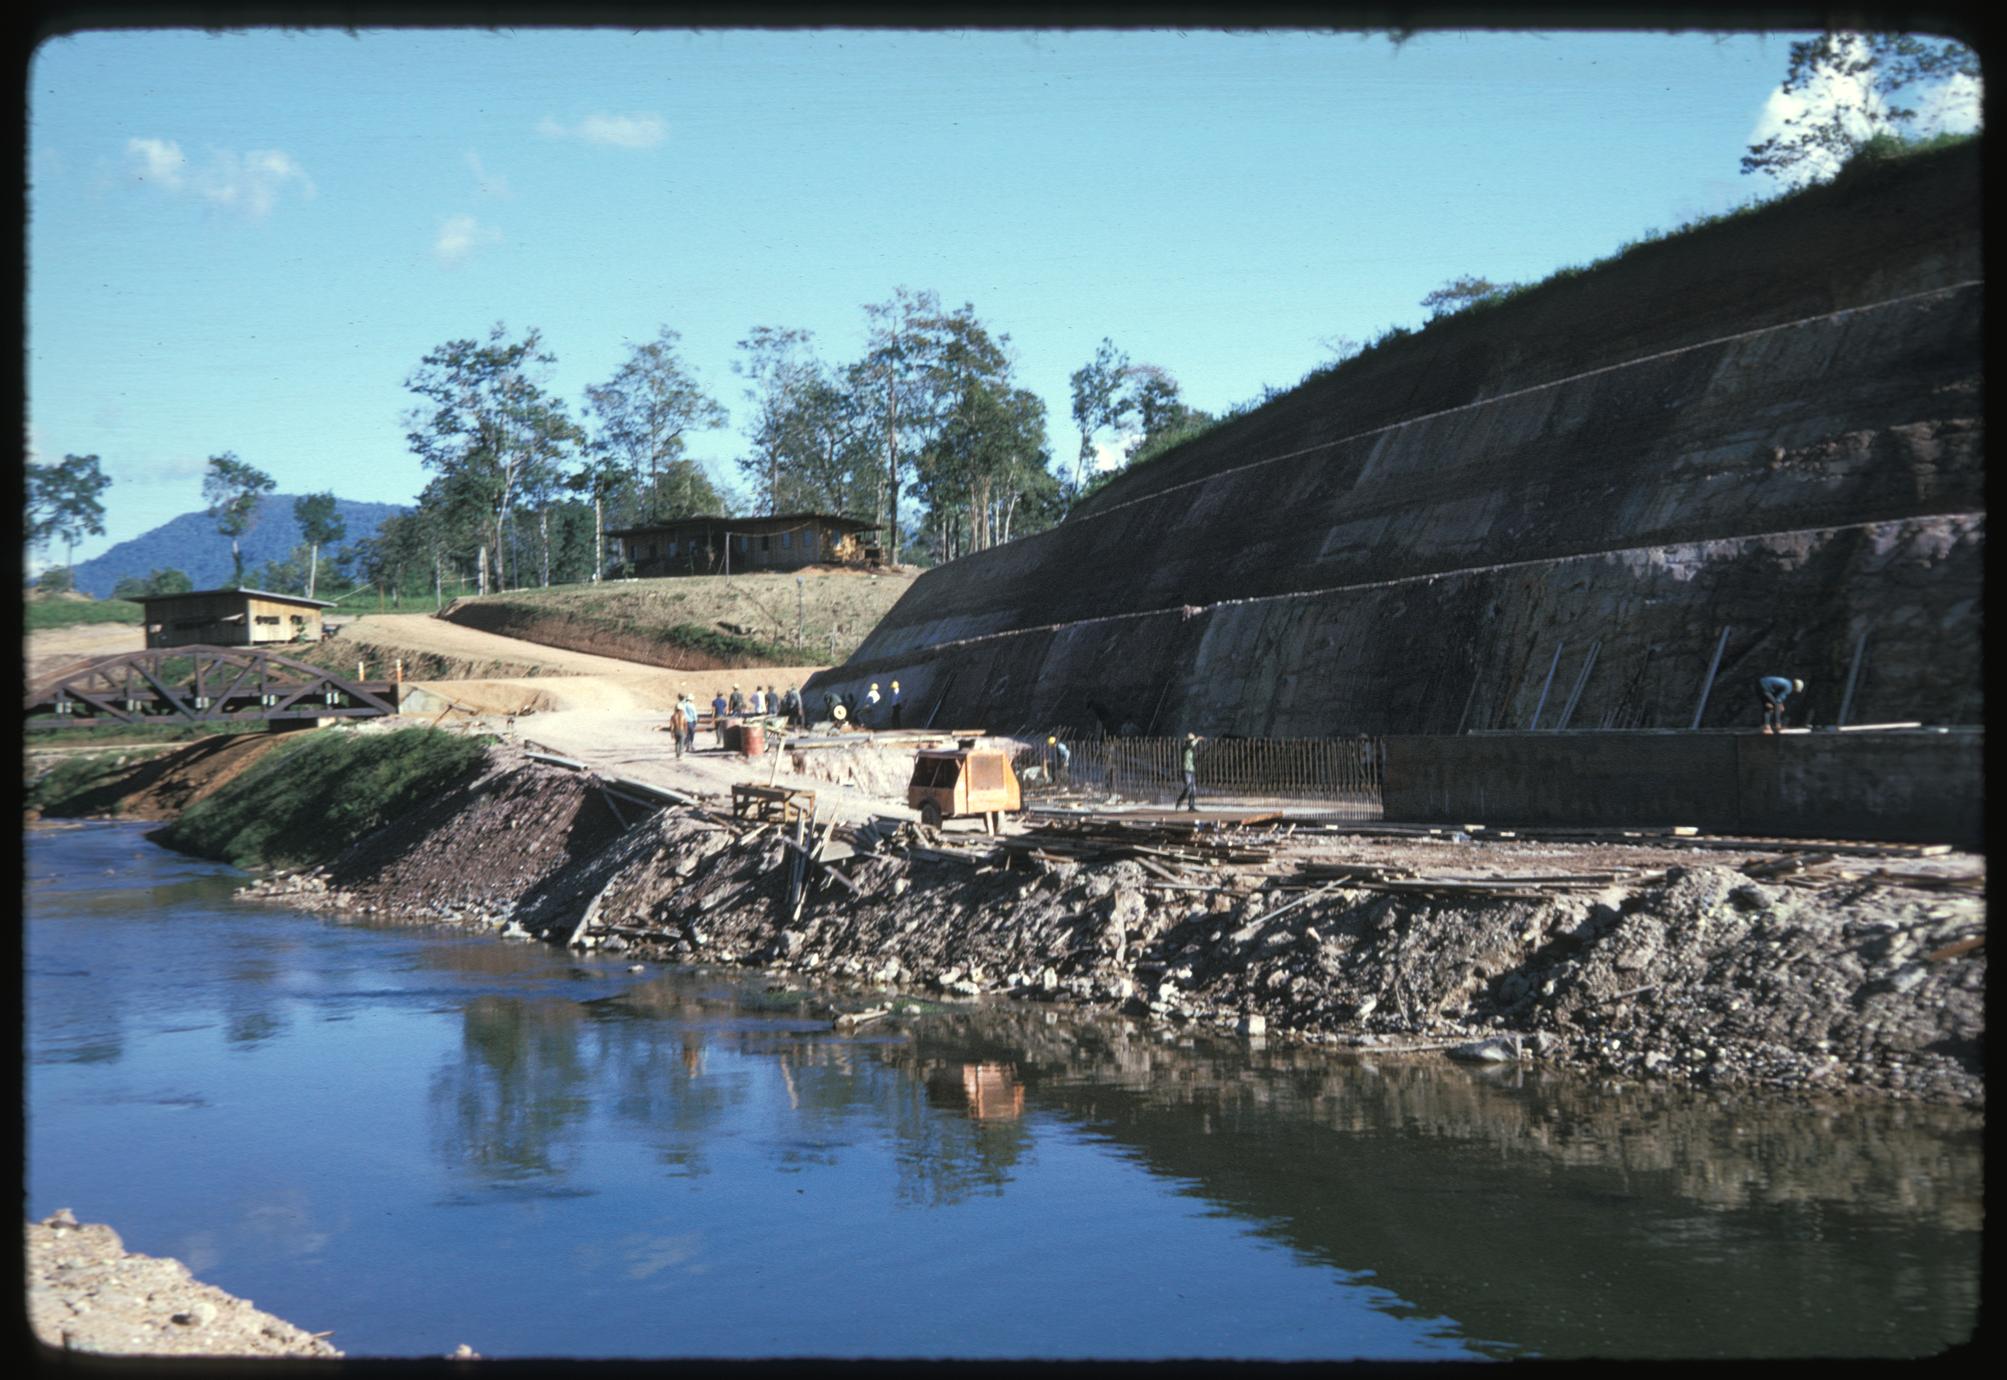 Below dam--excavating